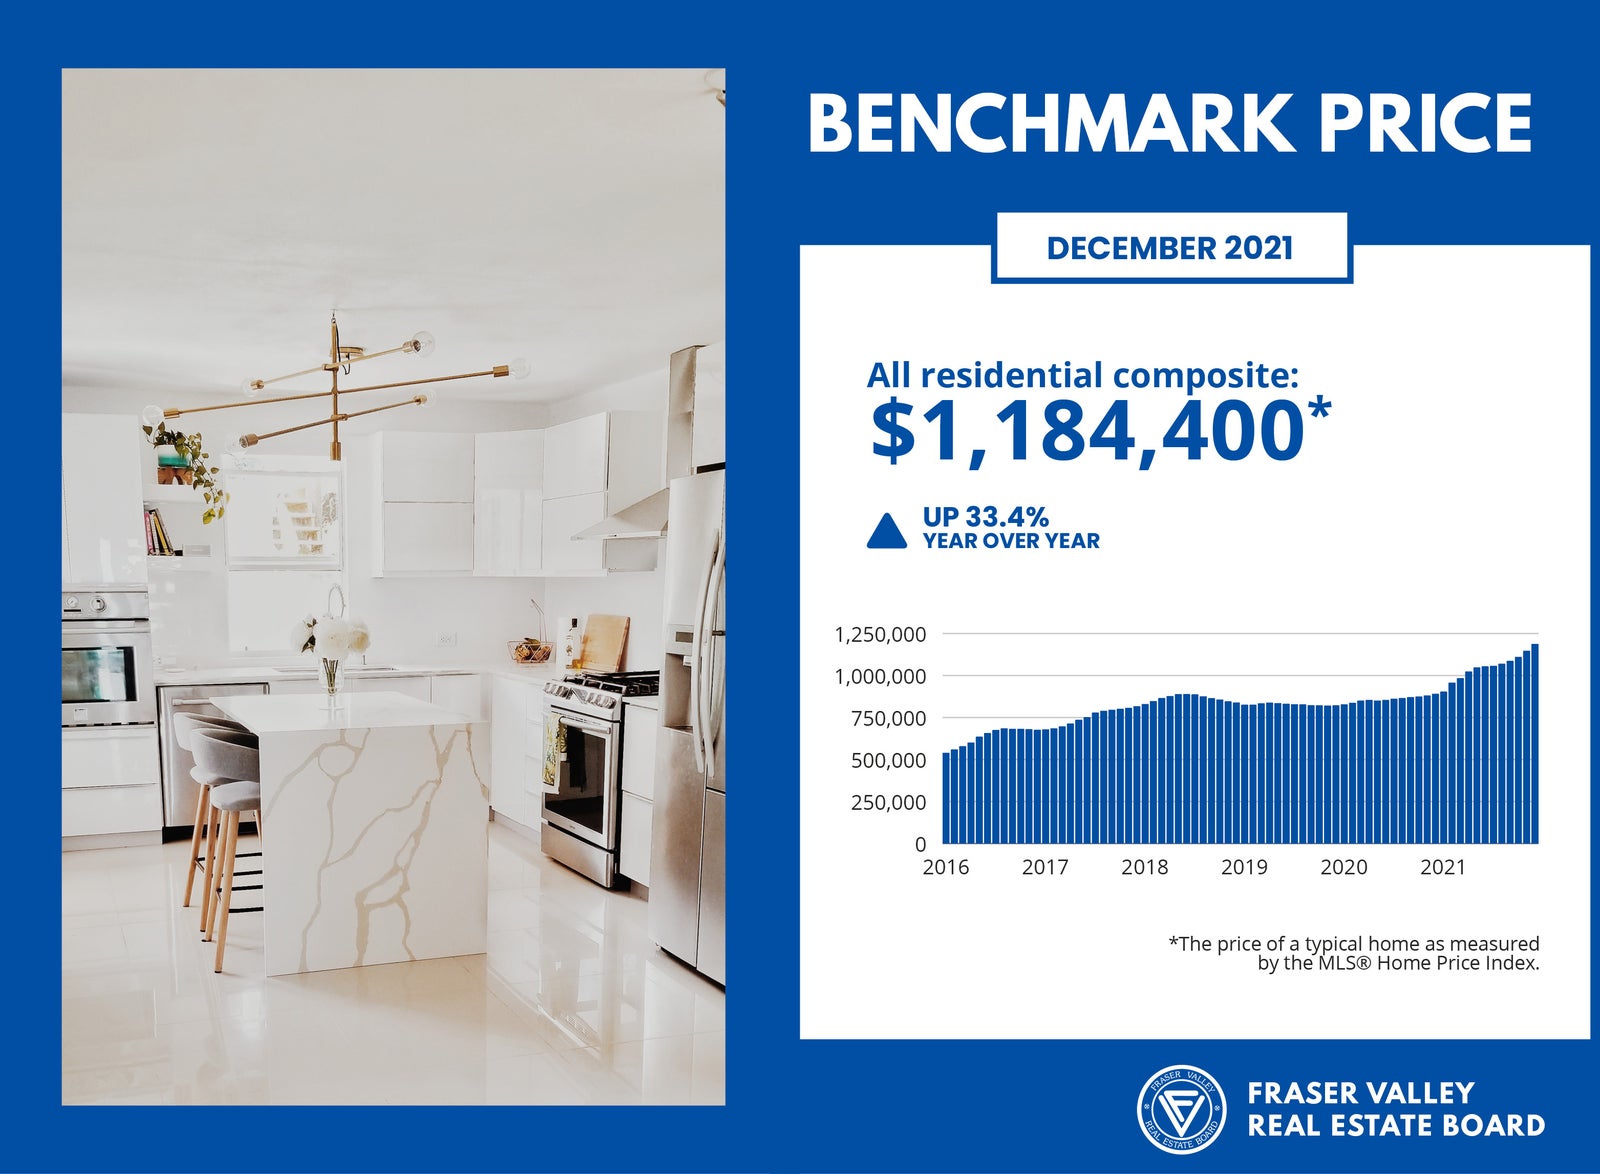 Benchmark Price for December 2021 - Fraser Valley Housing Market